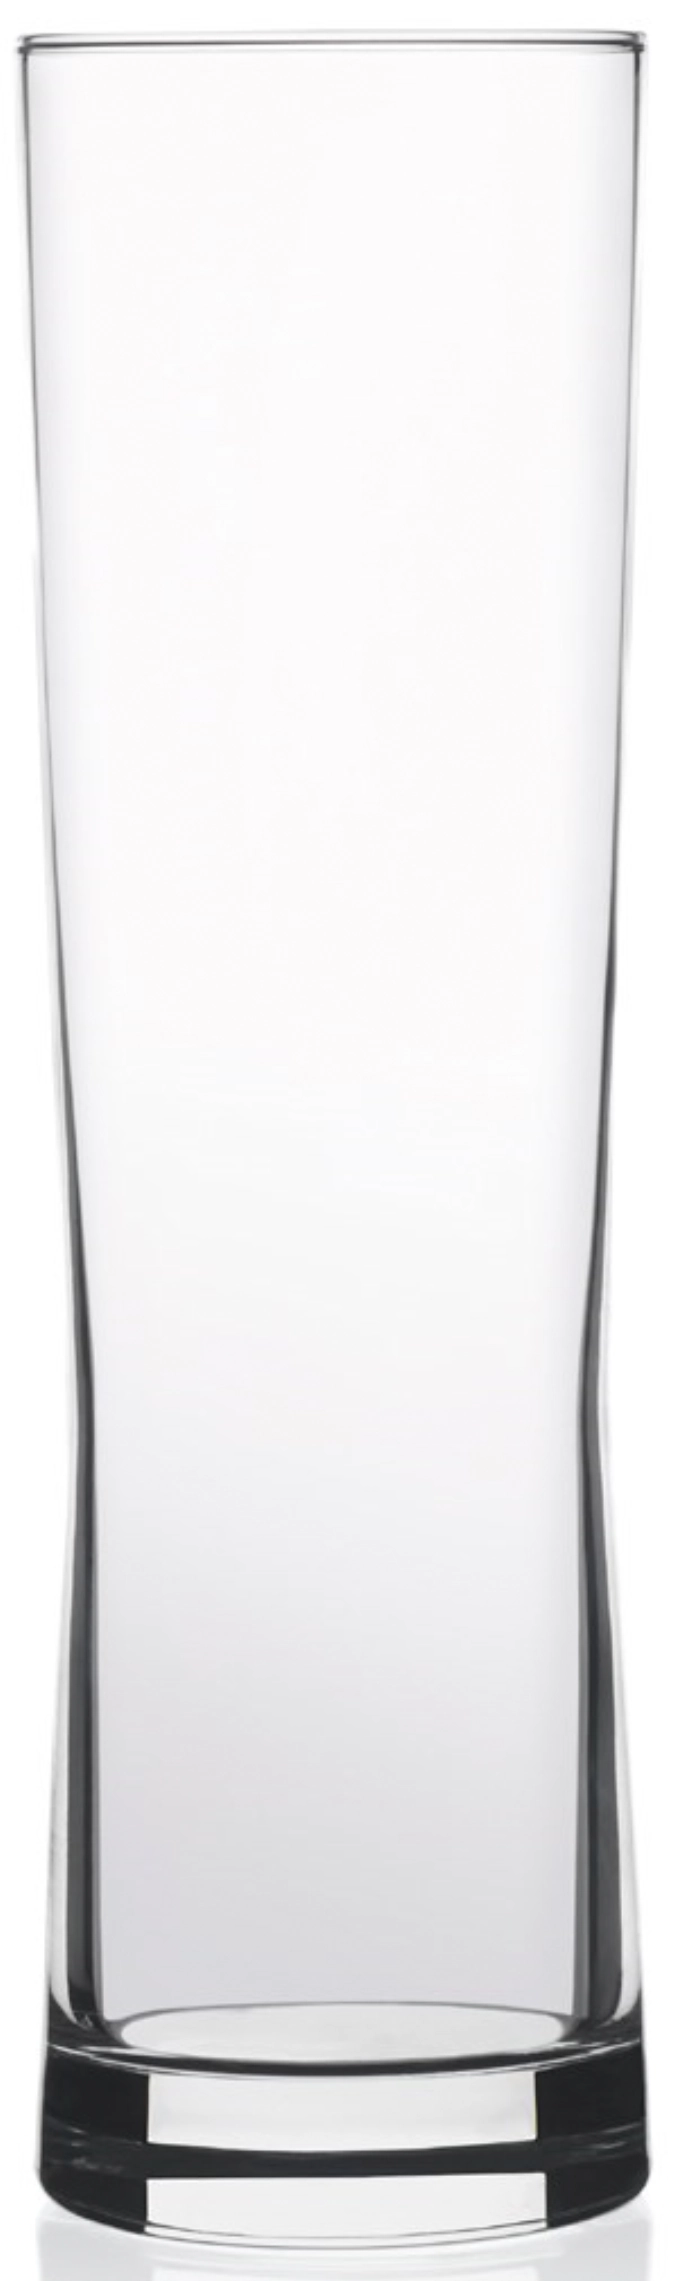 Fresh Glas-Becher 37cl, 3dl. /-/ 20.1cm